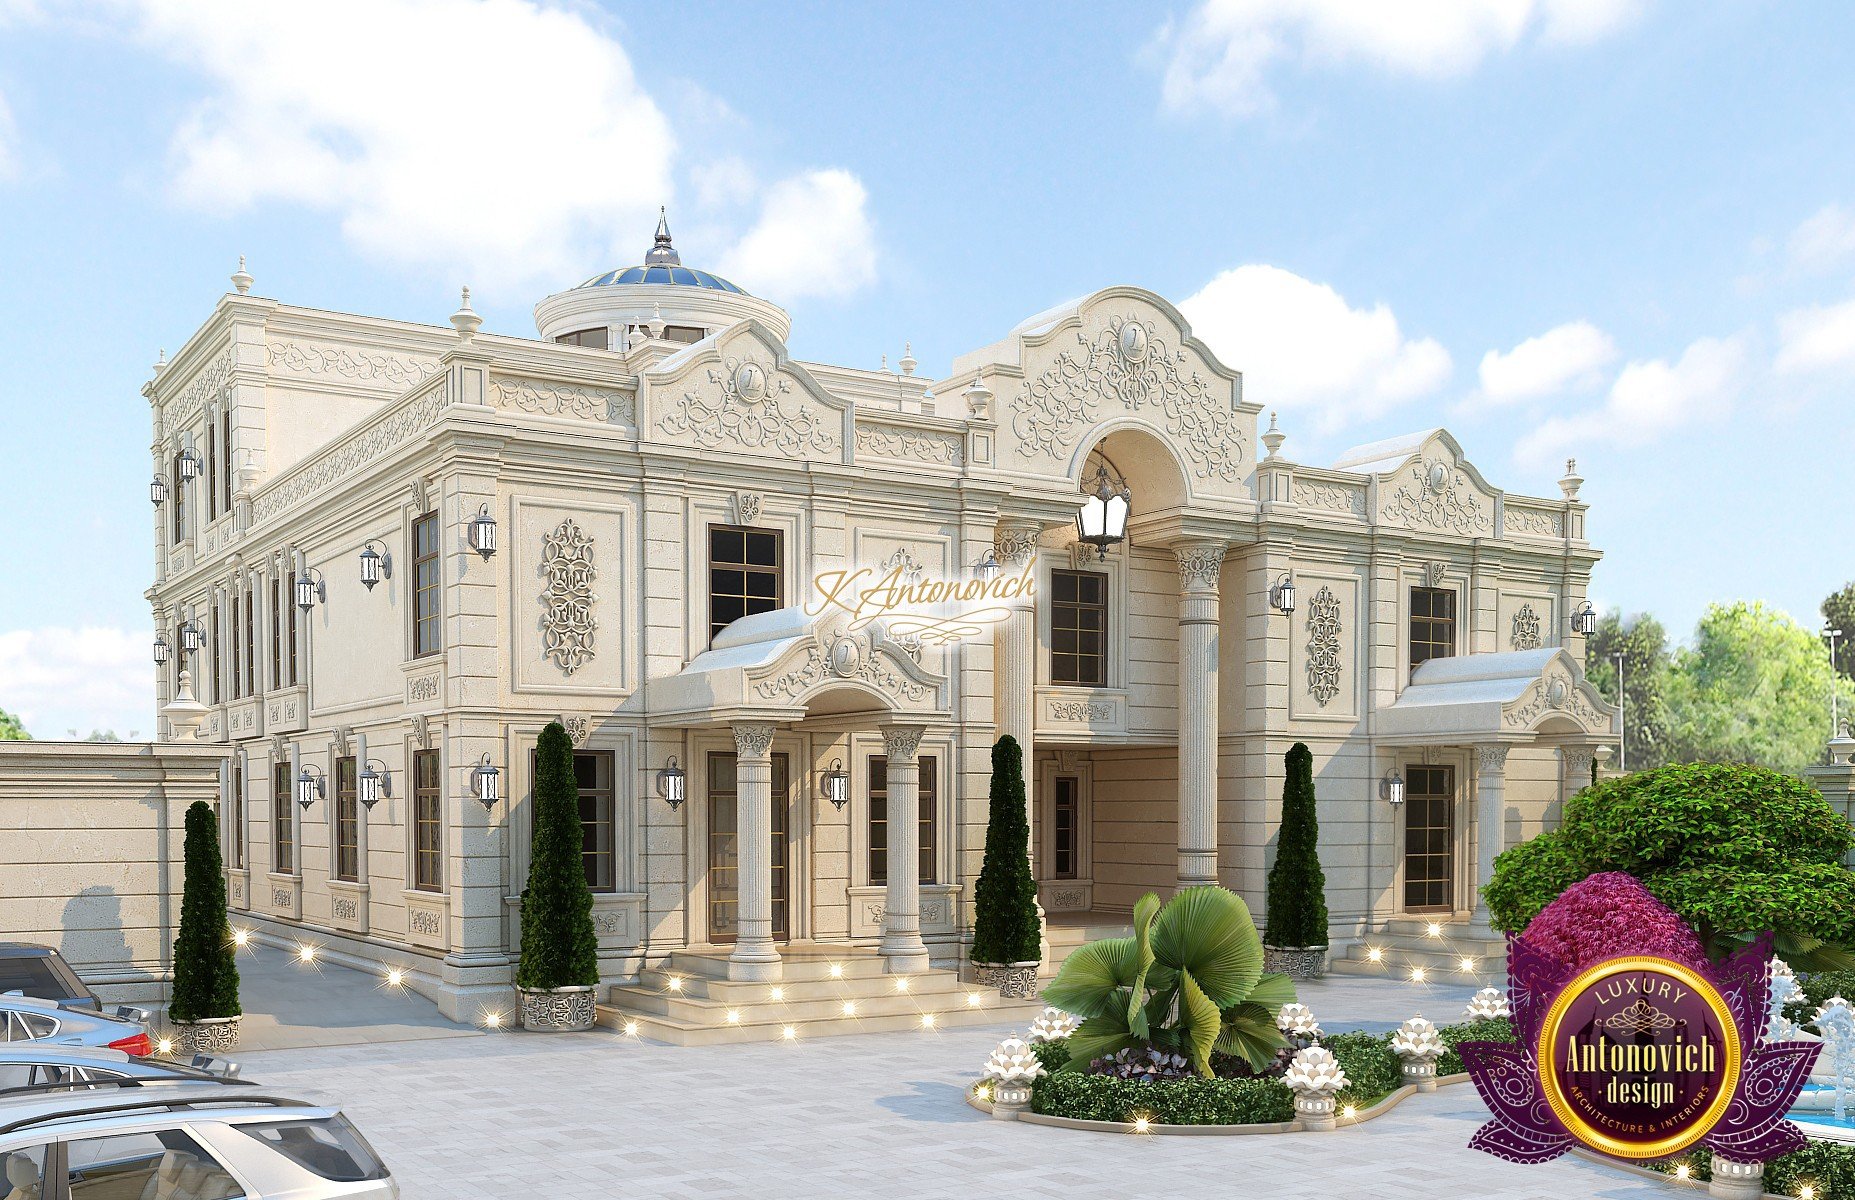 Luxury Classic Villa Exterior